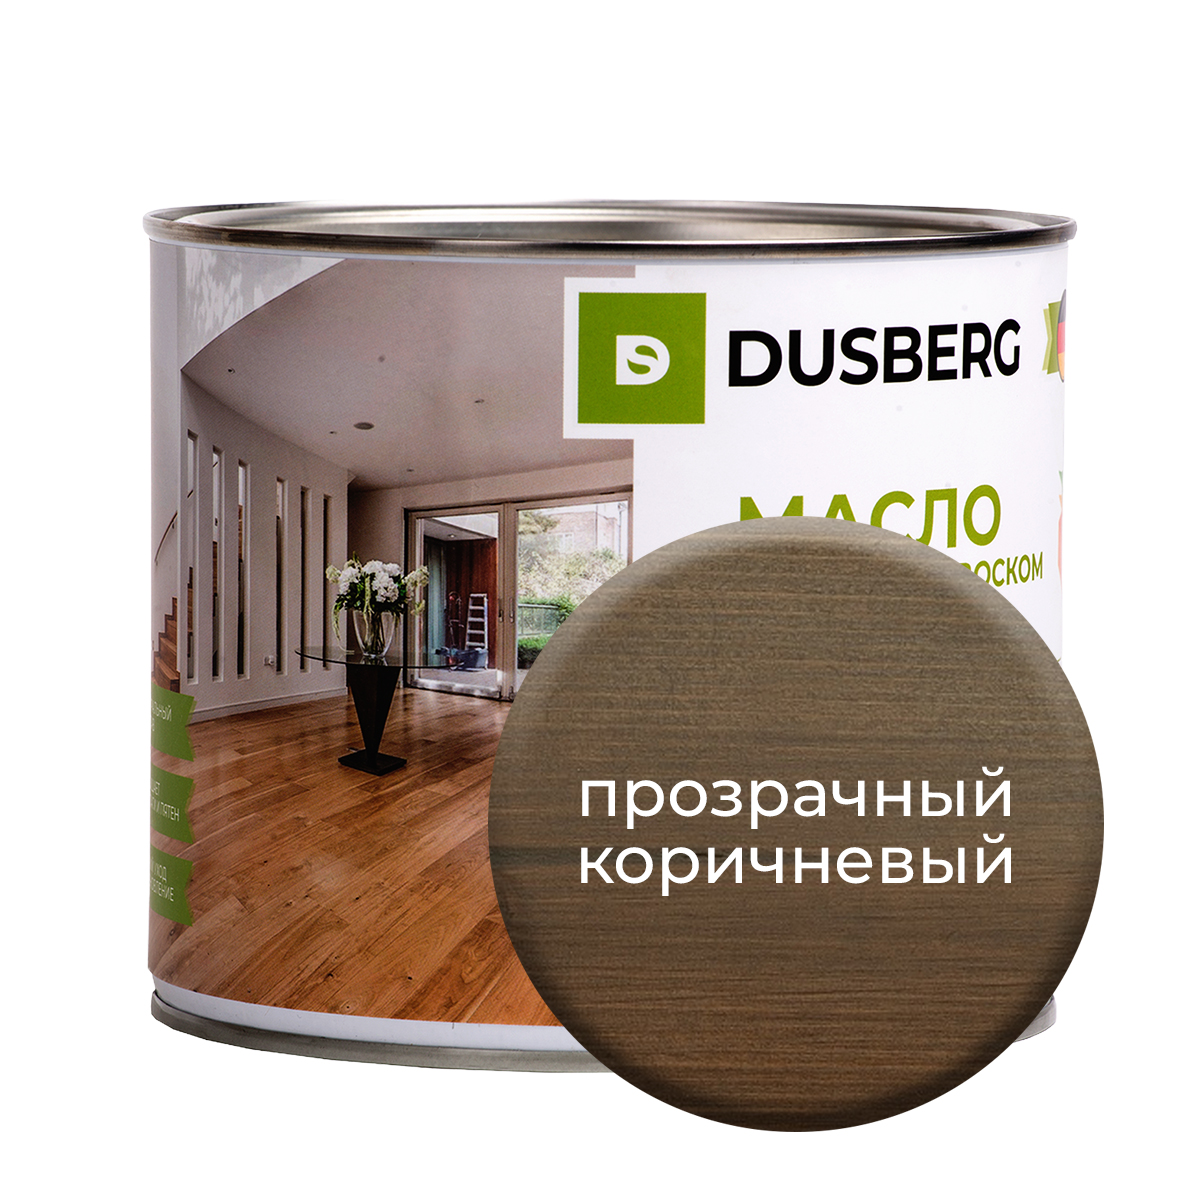 Масло Dusberg с твердым воском на бесцветной основе, 2 л Прозрачно-коричневый масло dusberg для дерева на бесцветной основе 750 мл светло коричневый